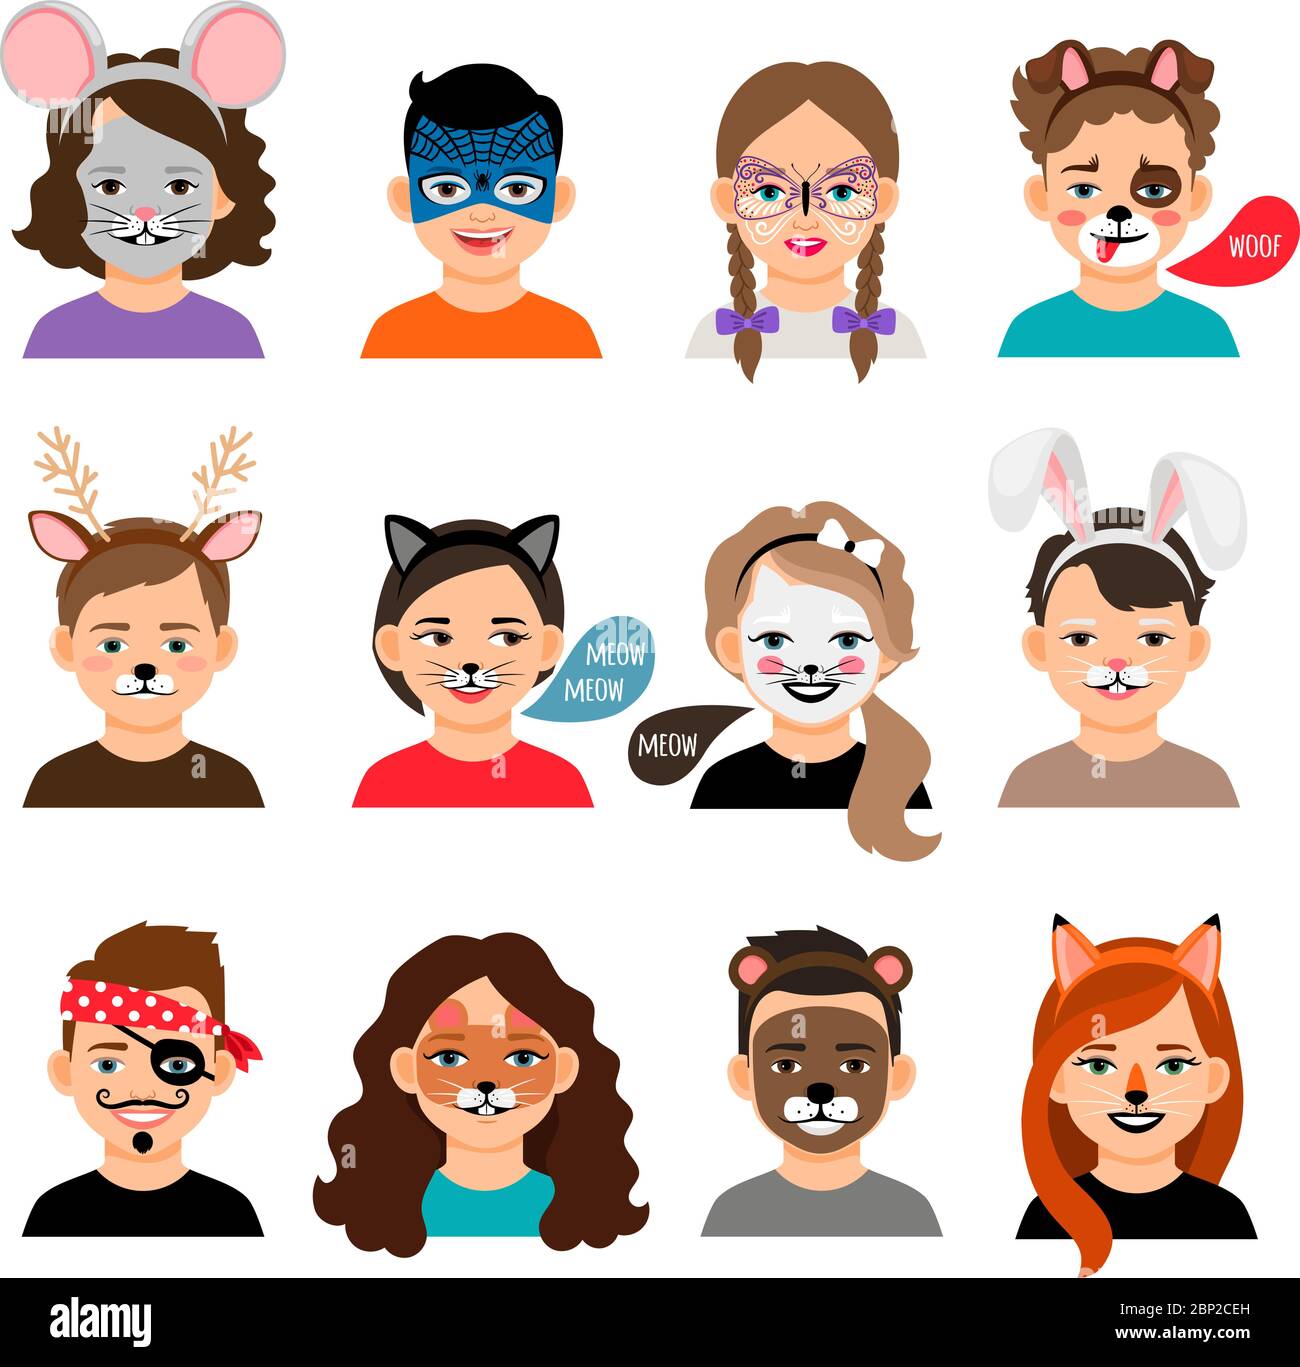 Peinture de visage pour enfants. Enfants avec peinture visages illustration vectorielle, face à des peintures comme le renard, tigre et masque de chat maquillage Illustration de Vecteur